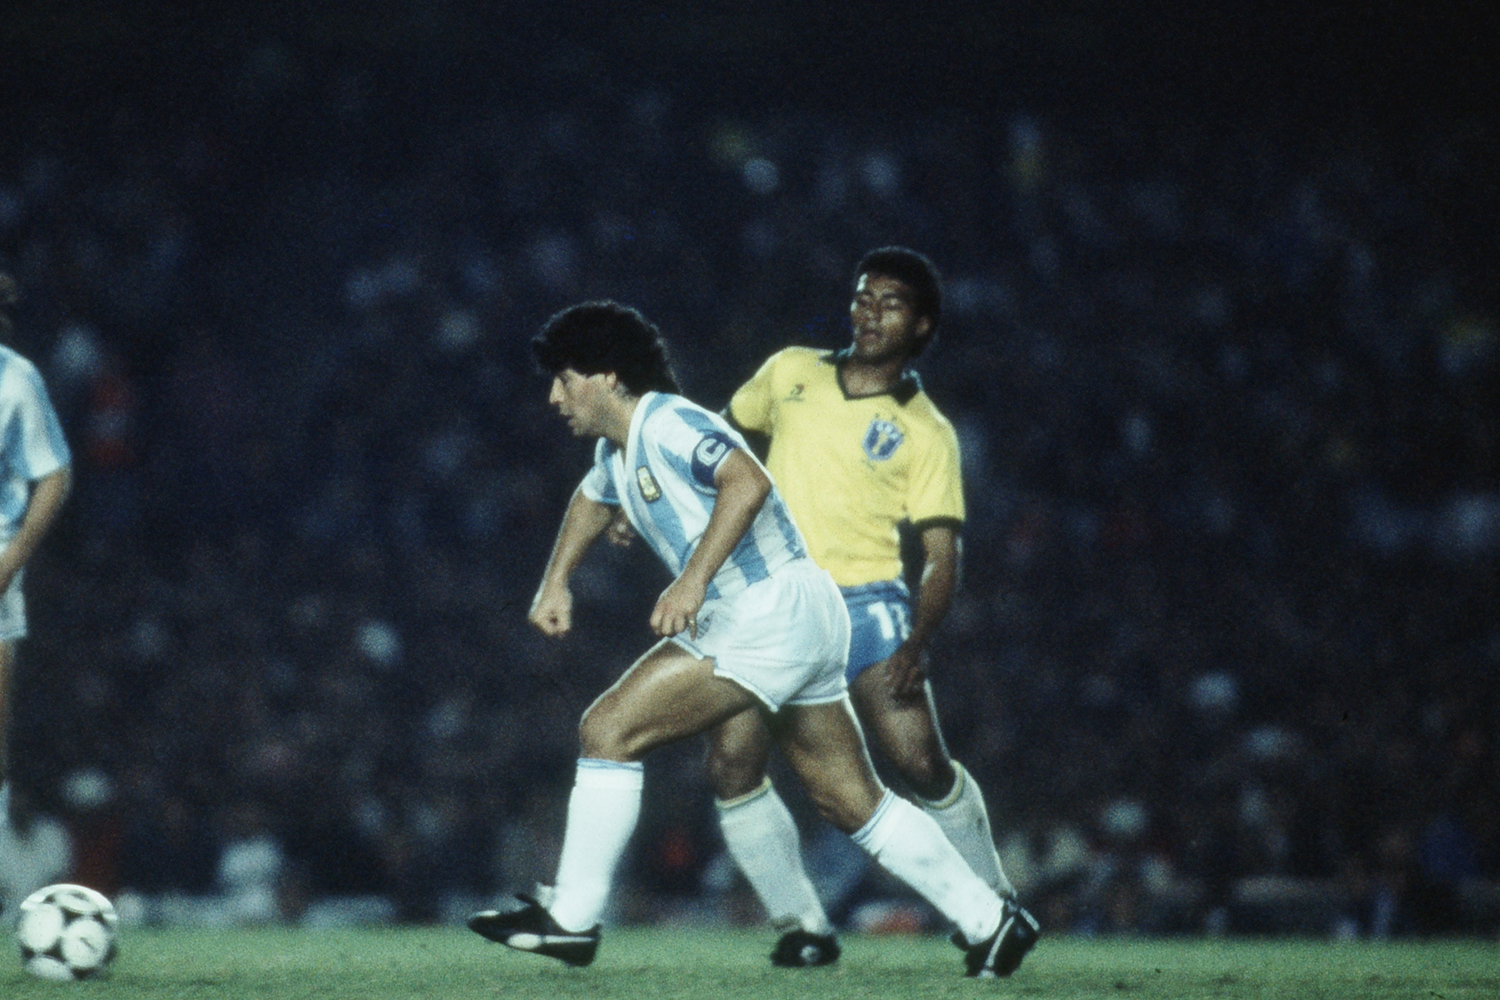 Para rever em casa: um show da seleção com caneta de Romário em Maradona